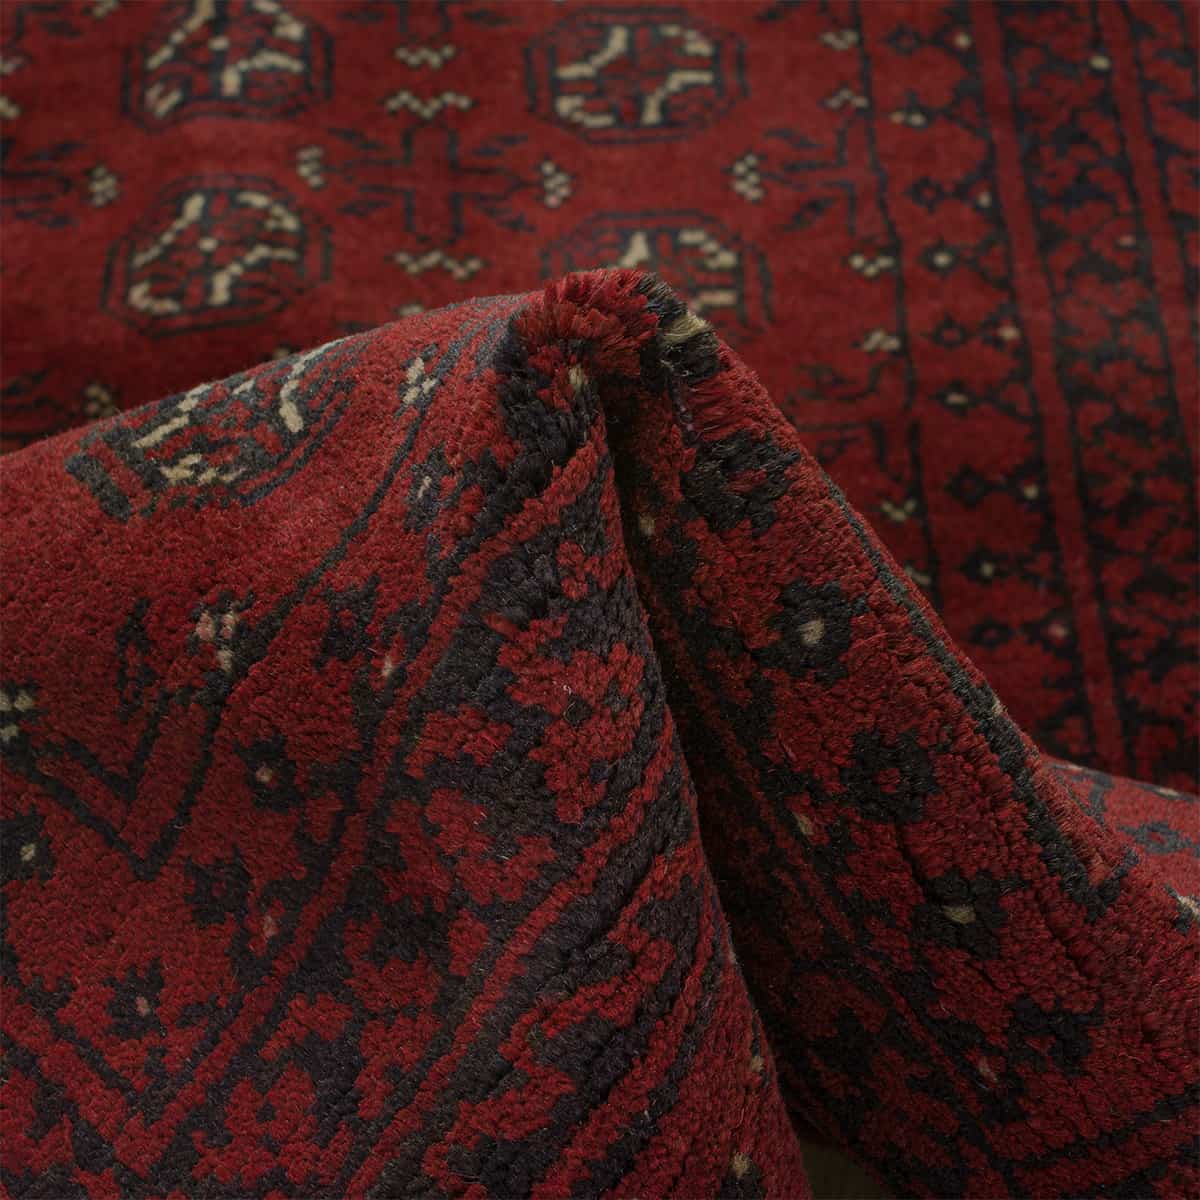  בוכרה 00 אדום 97x147 | השטיח האדום 